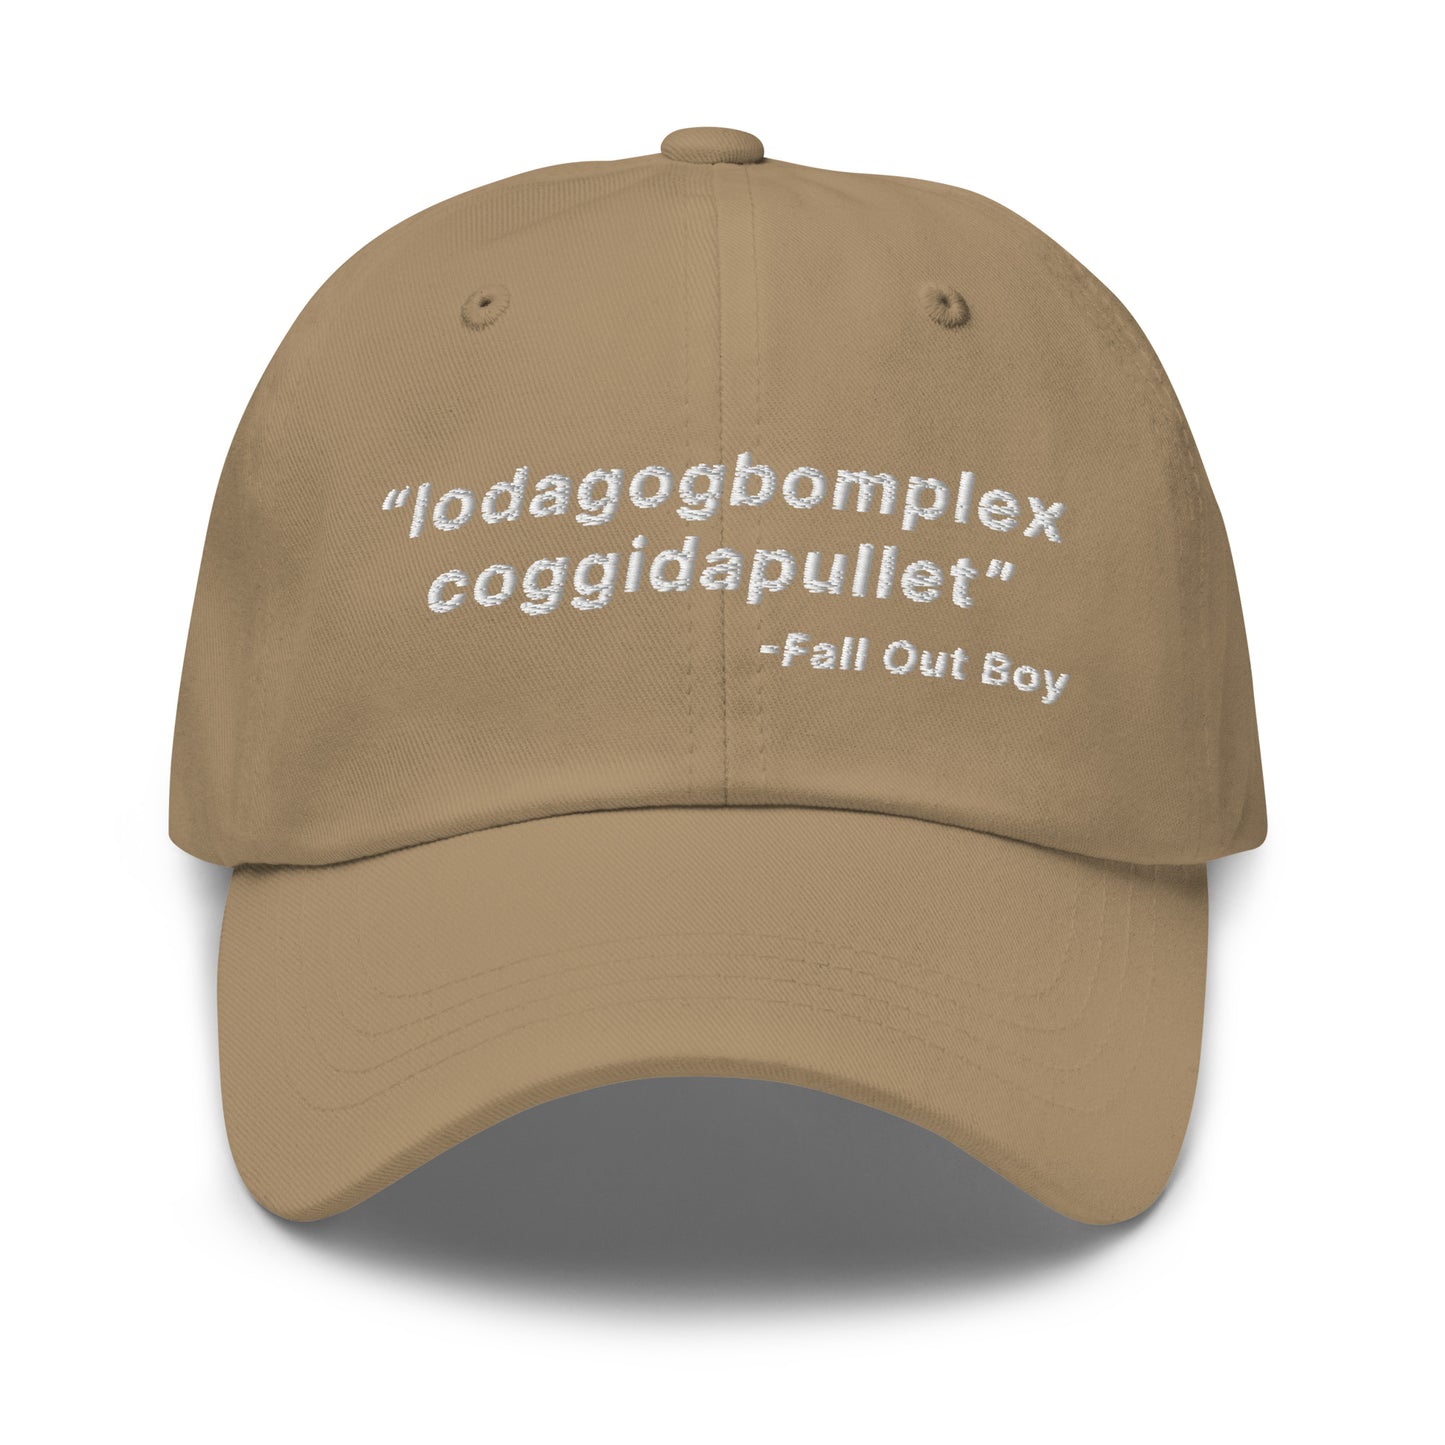 Lodagogbomplex Coggidapullet (Fall Out Boy) hat